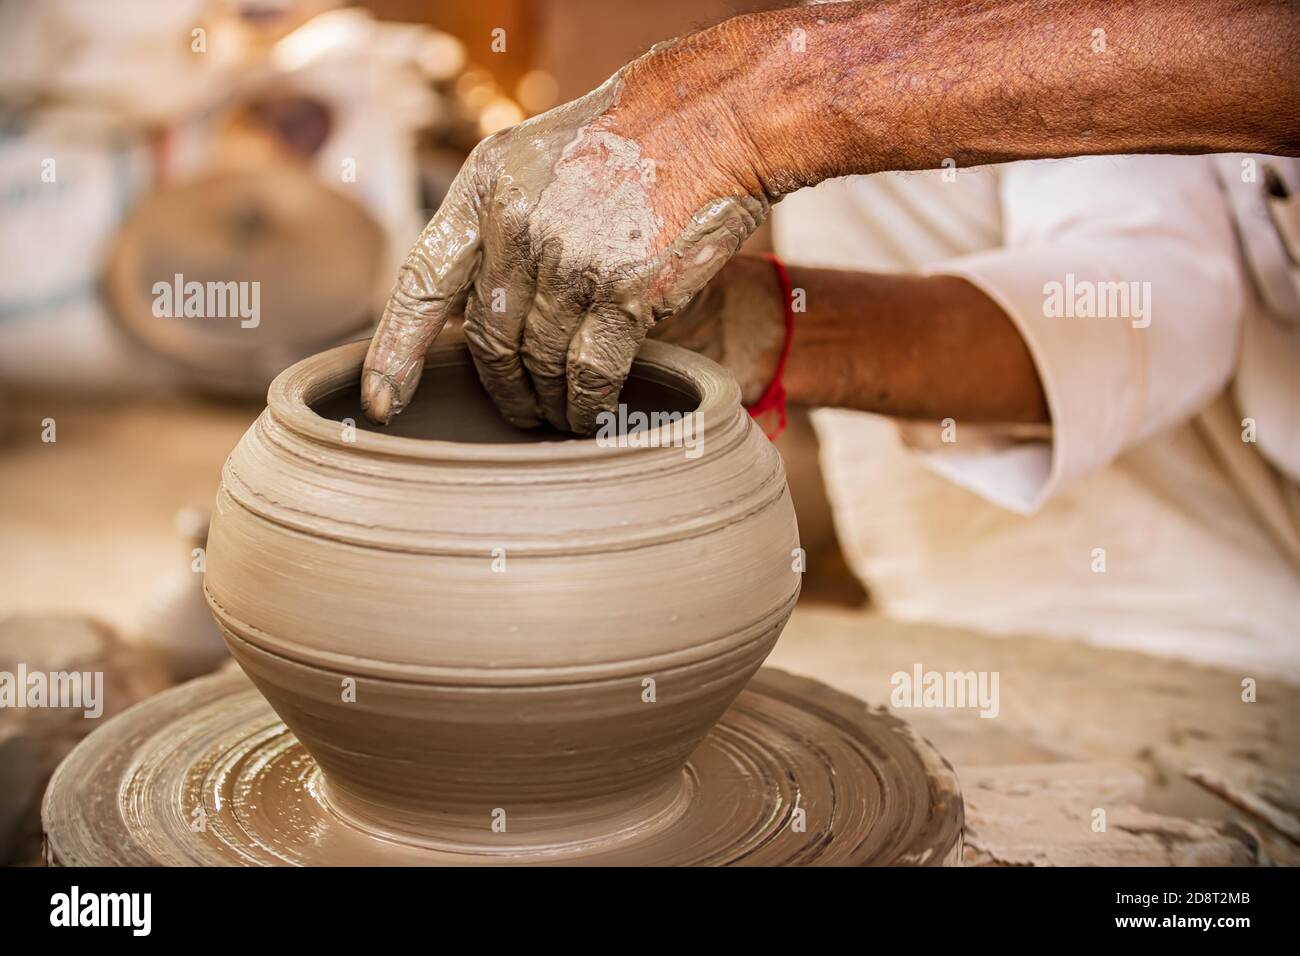 Potter am Arbeitsplatz macht Keramik Geschirr. Indien, Rajasthan. Stockfoto